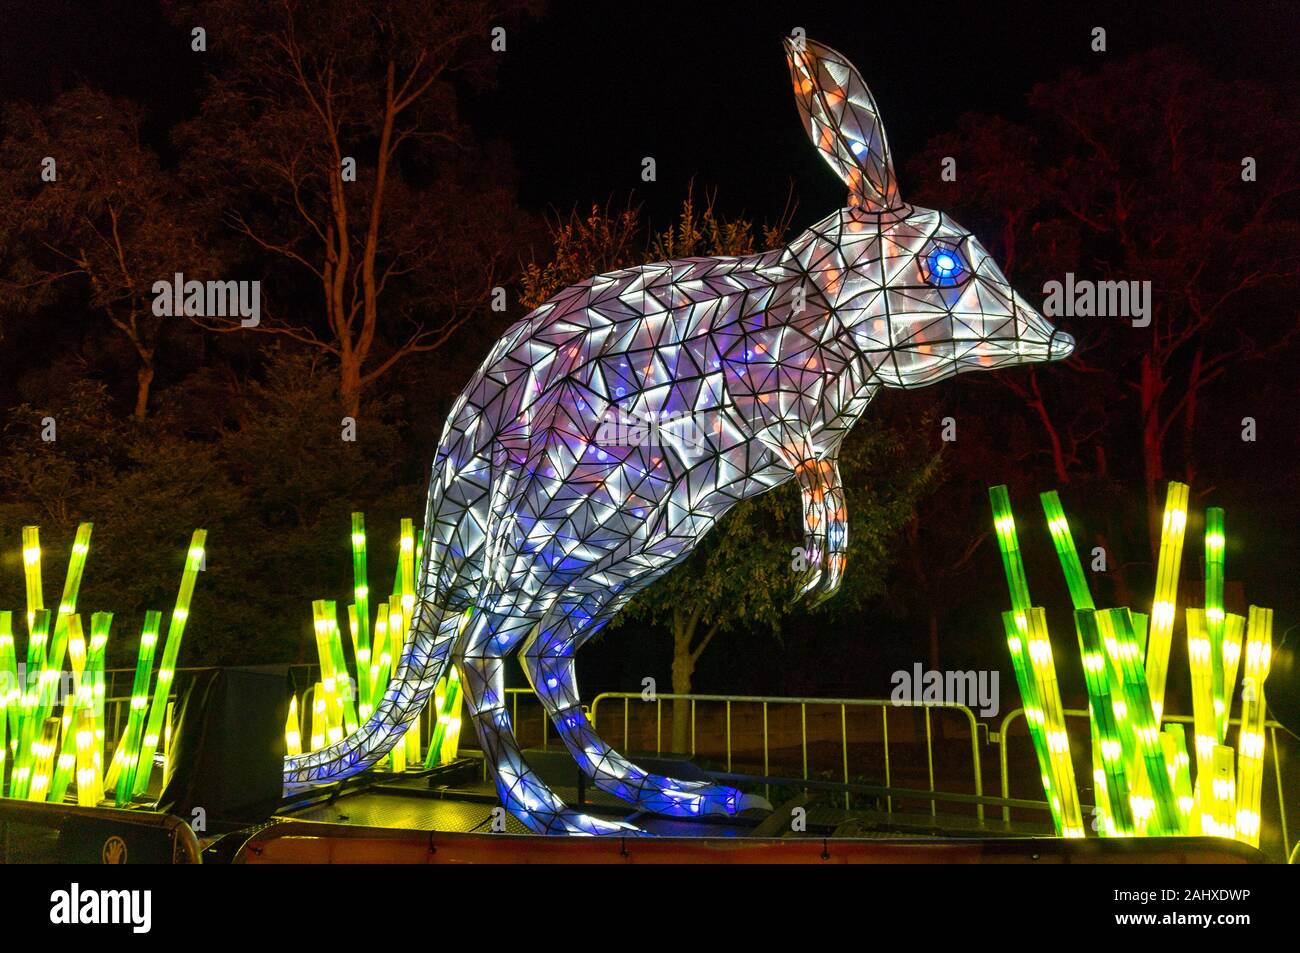 Sydney, Australia - 11 de junio: Vivid Sydney en el Zoológico de Taronga bilby escultura de luz Foto de stock